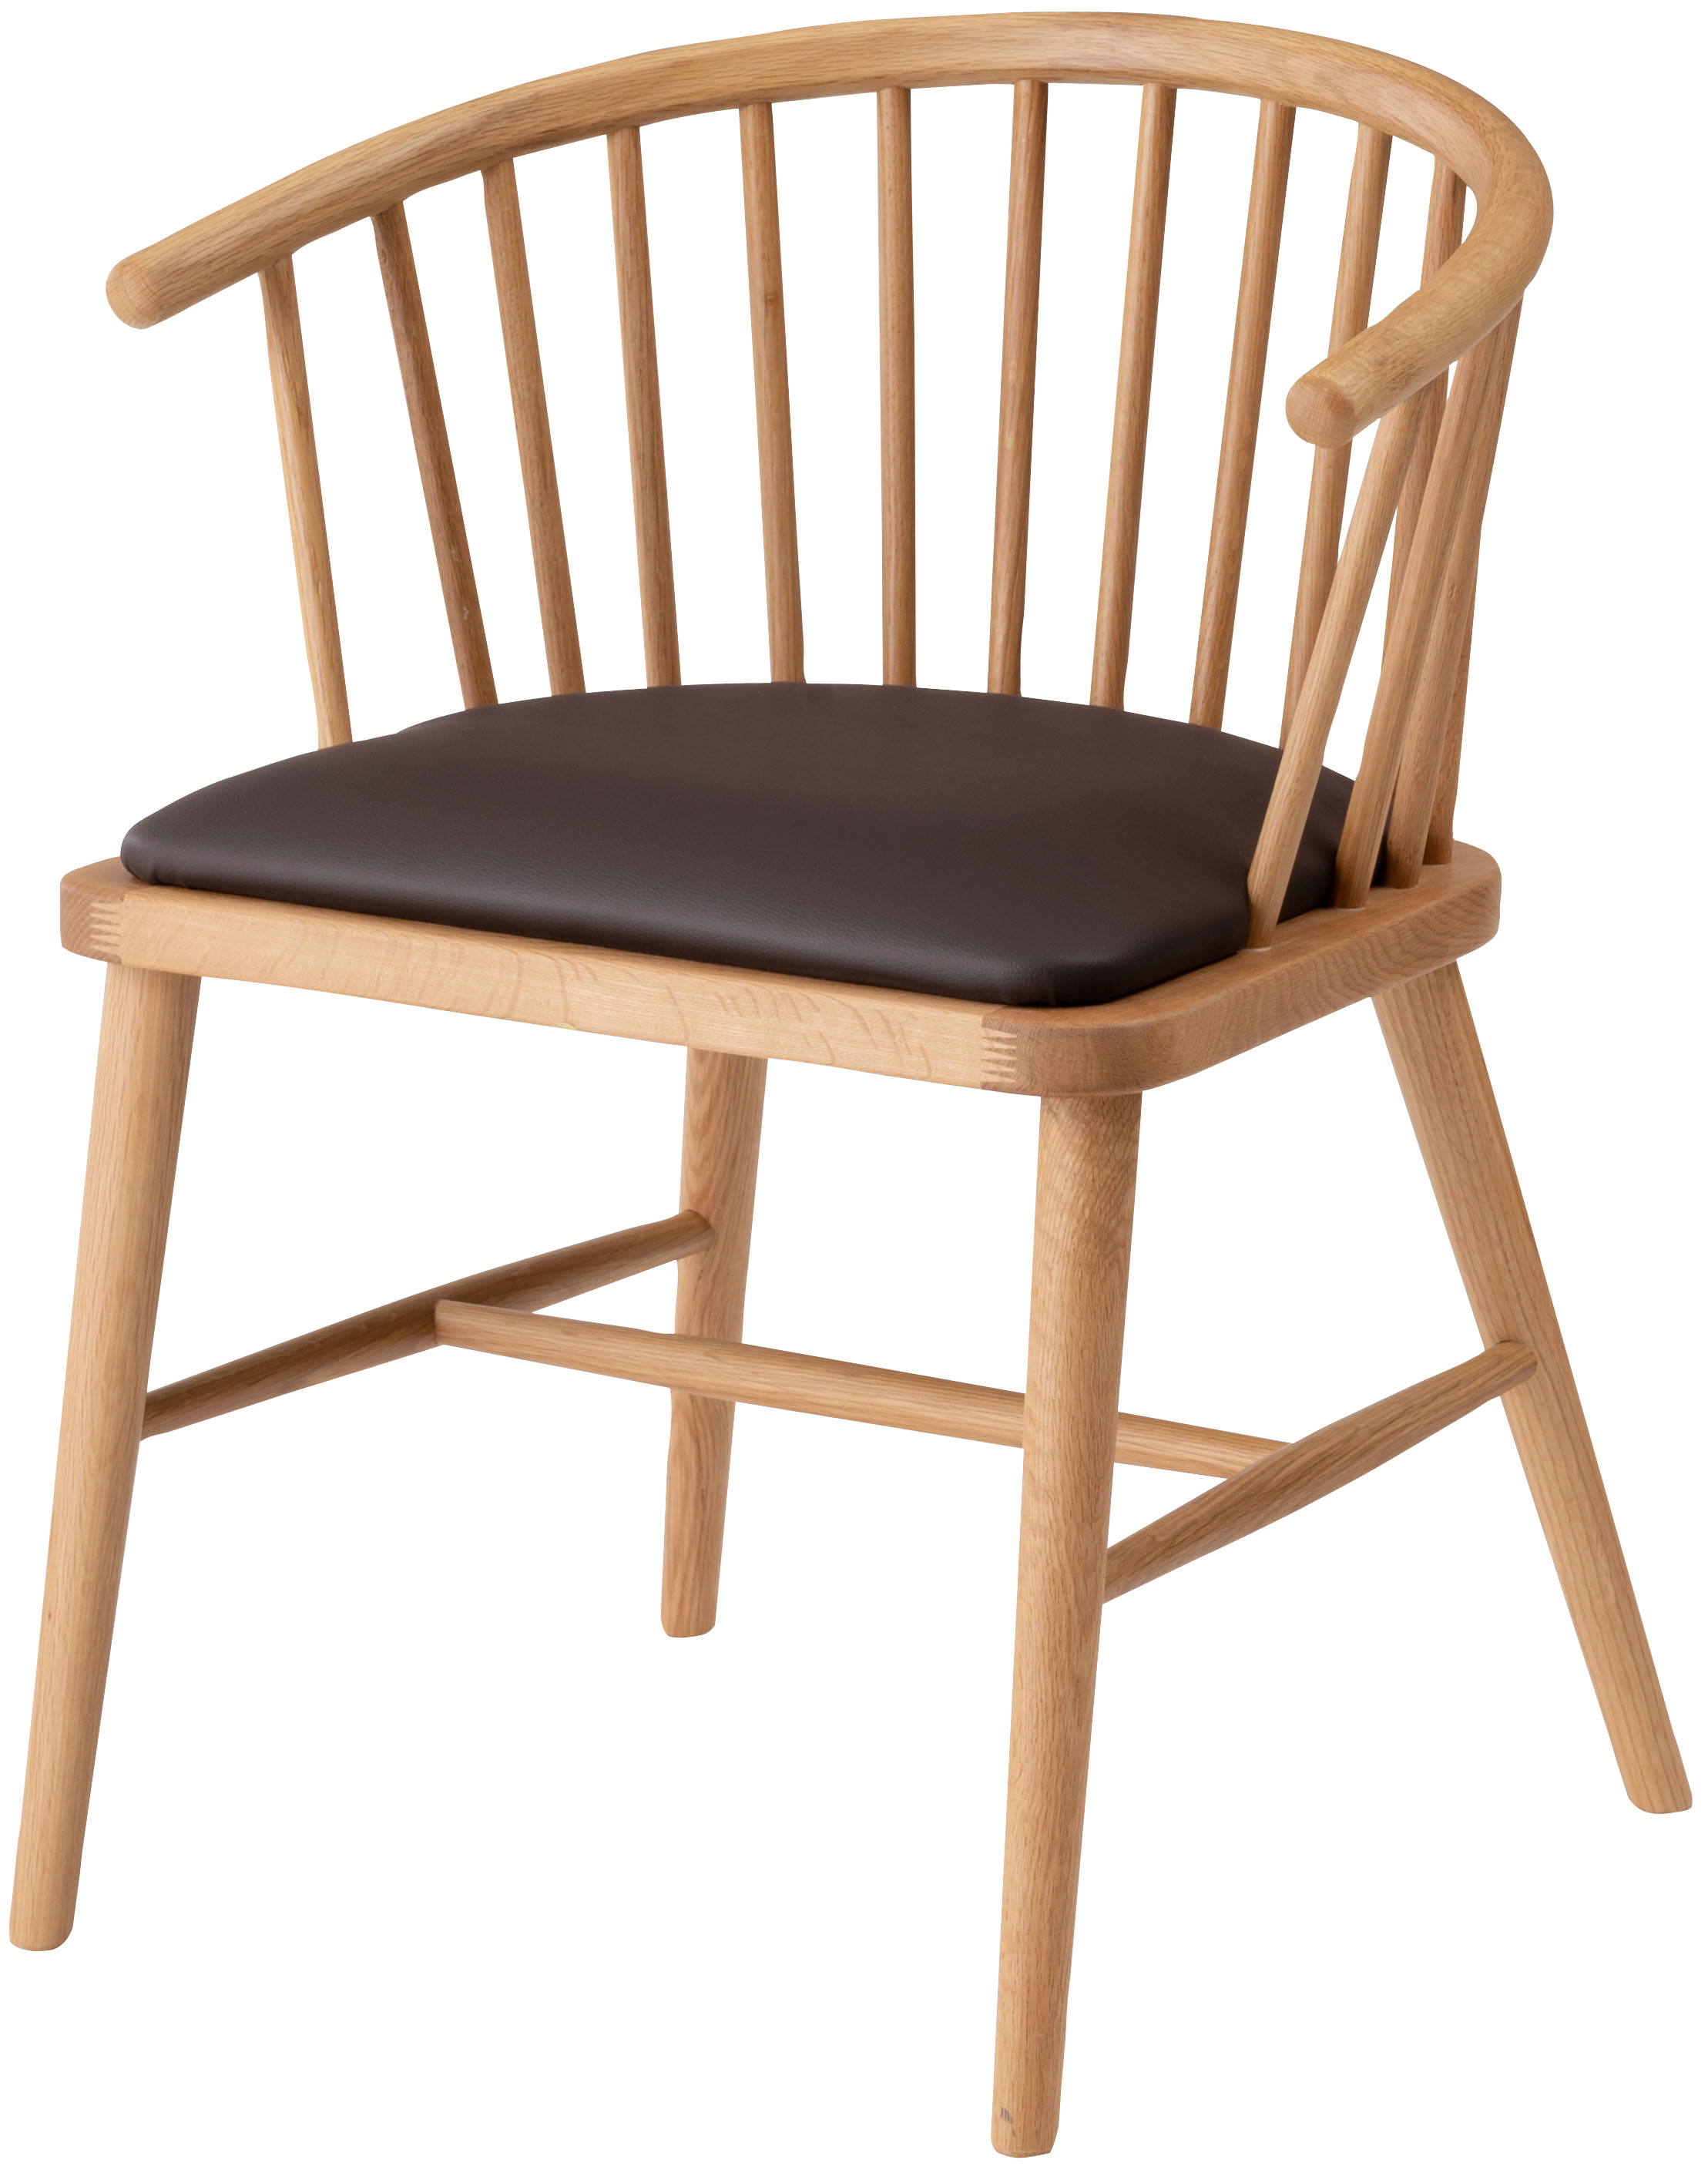 ダイニングチェア 椅子 北欧 おしゃれ ナチュラル アームチェア ウィンザーチェアー 天然木製 背もたれ カフェ風 合わせやすい カントリー  クッション座面 単品